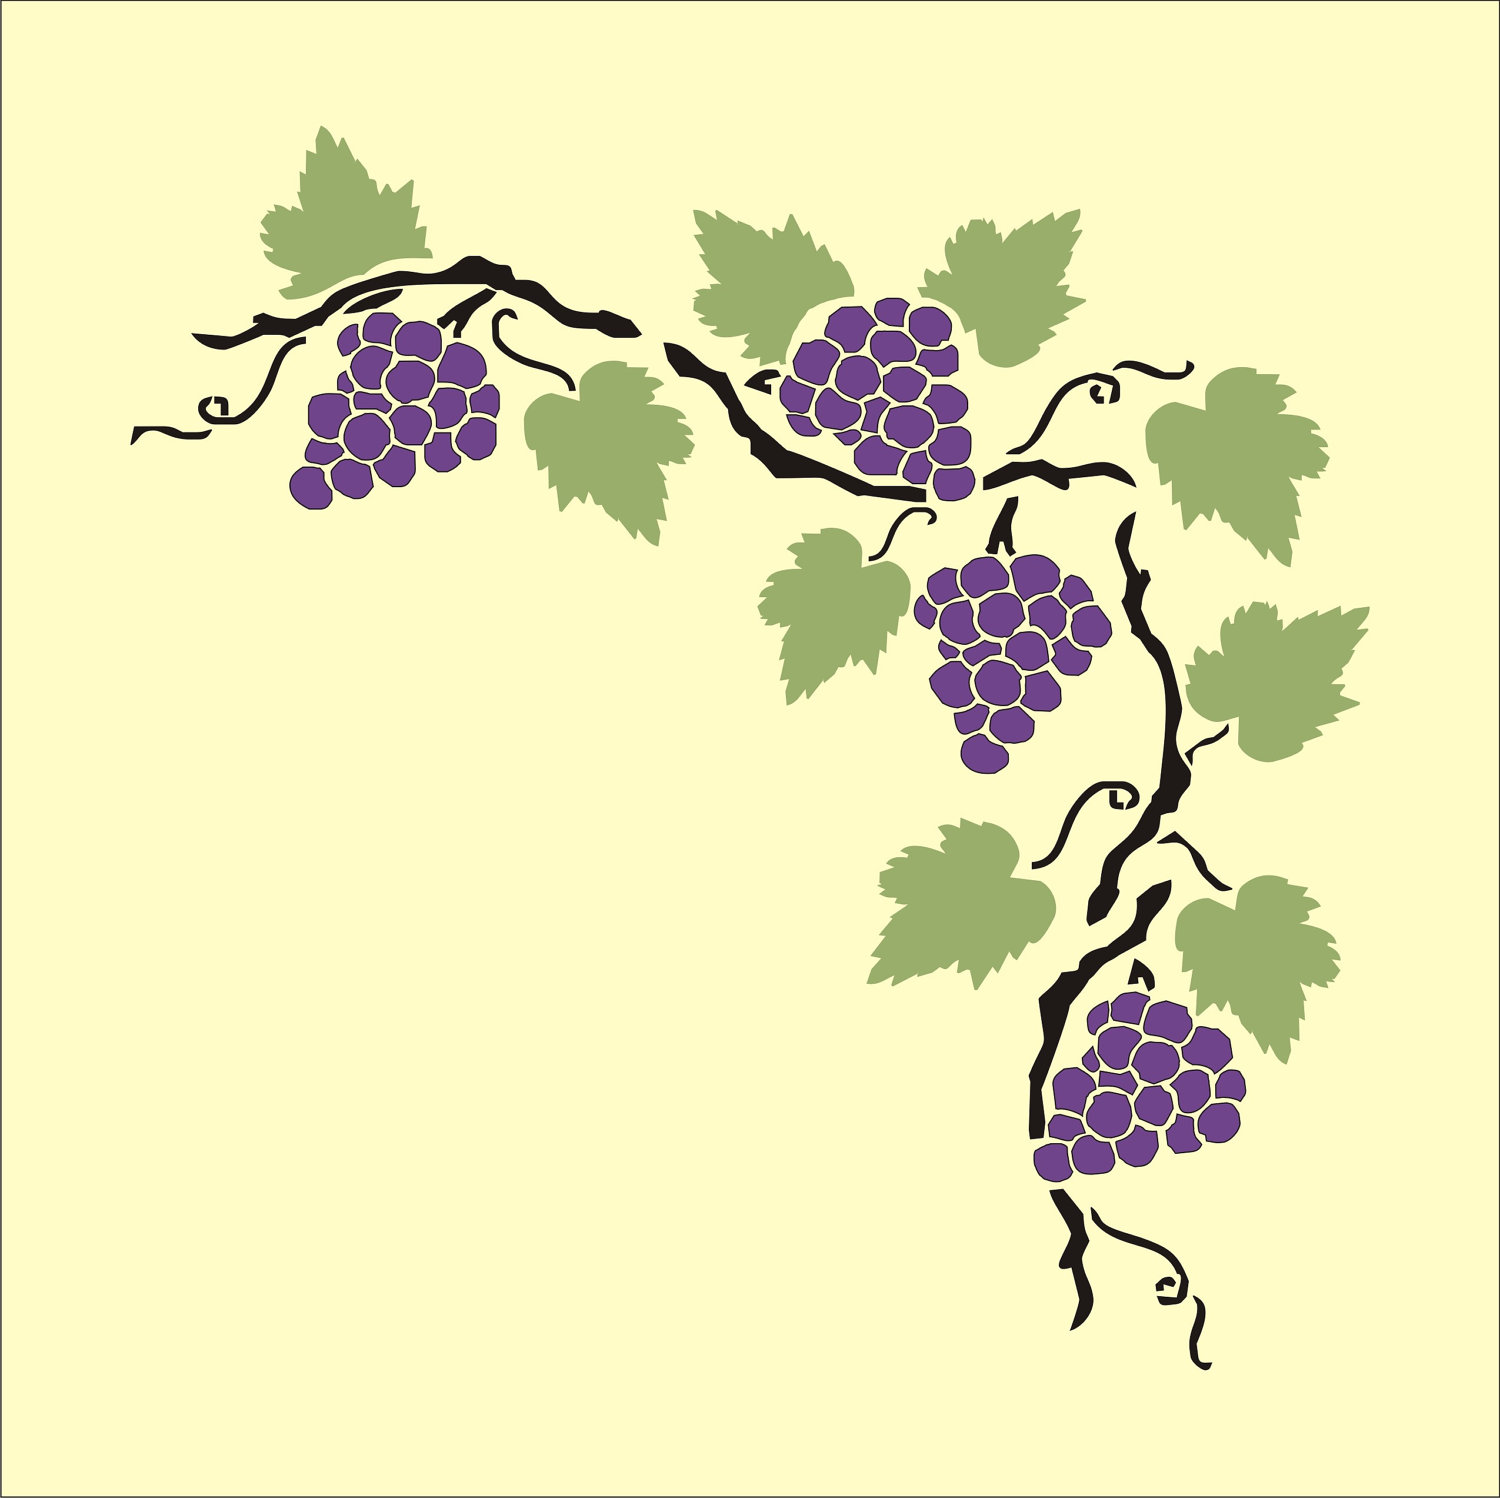 grape clipart branch